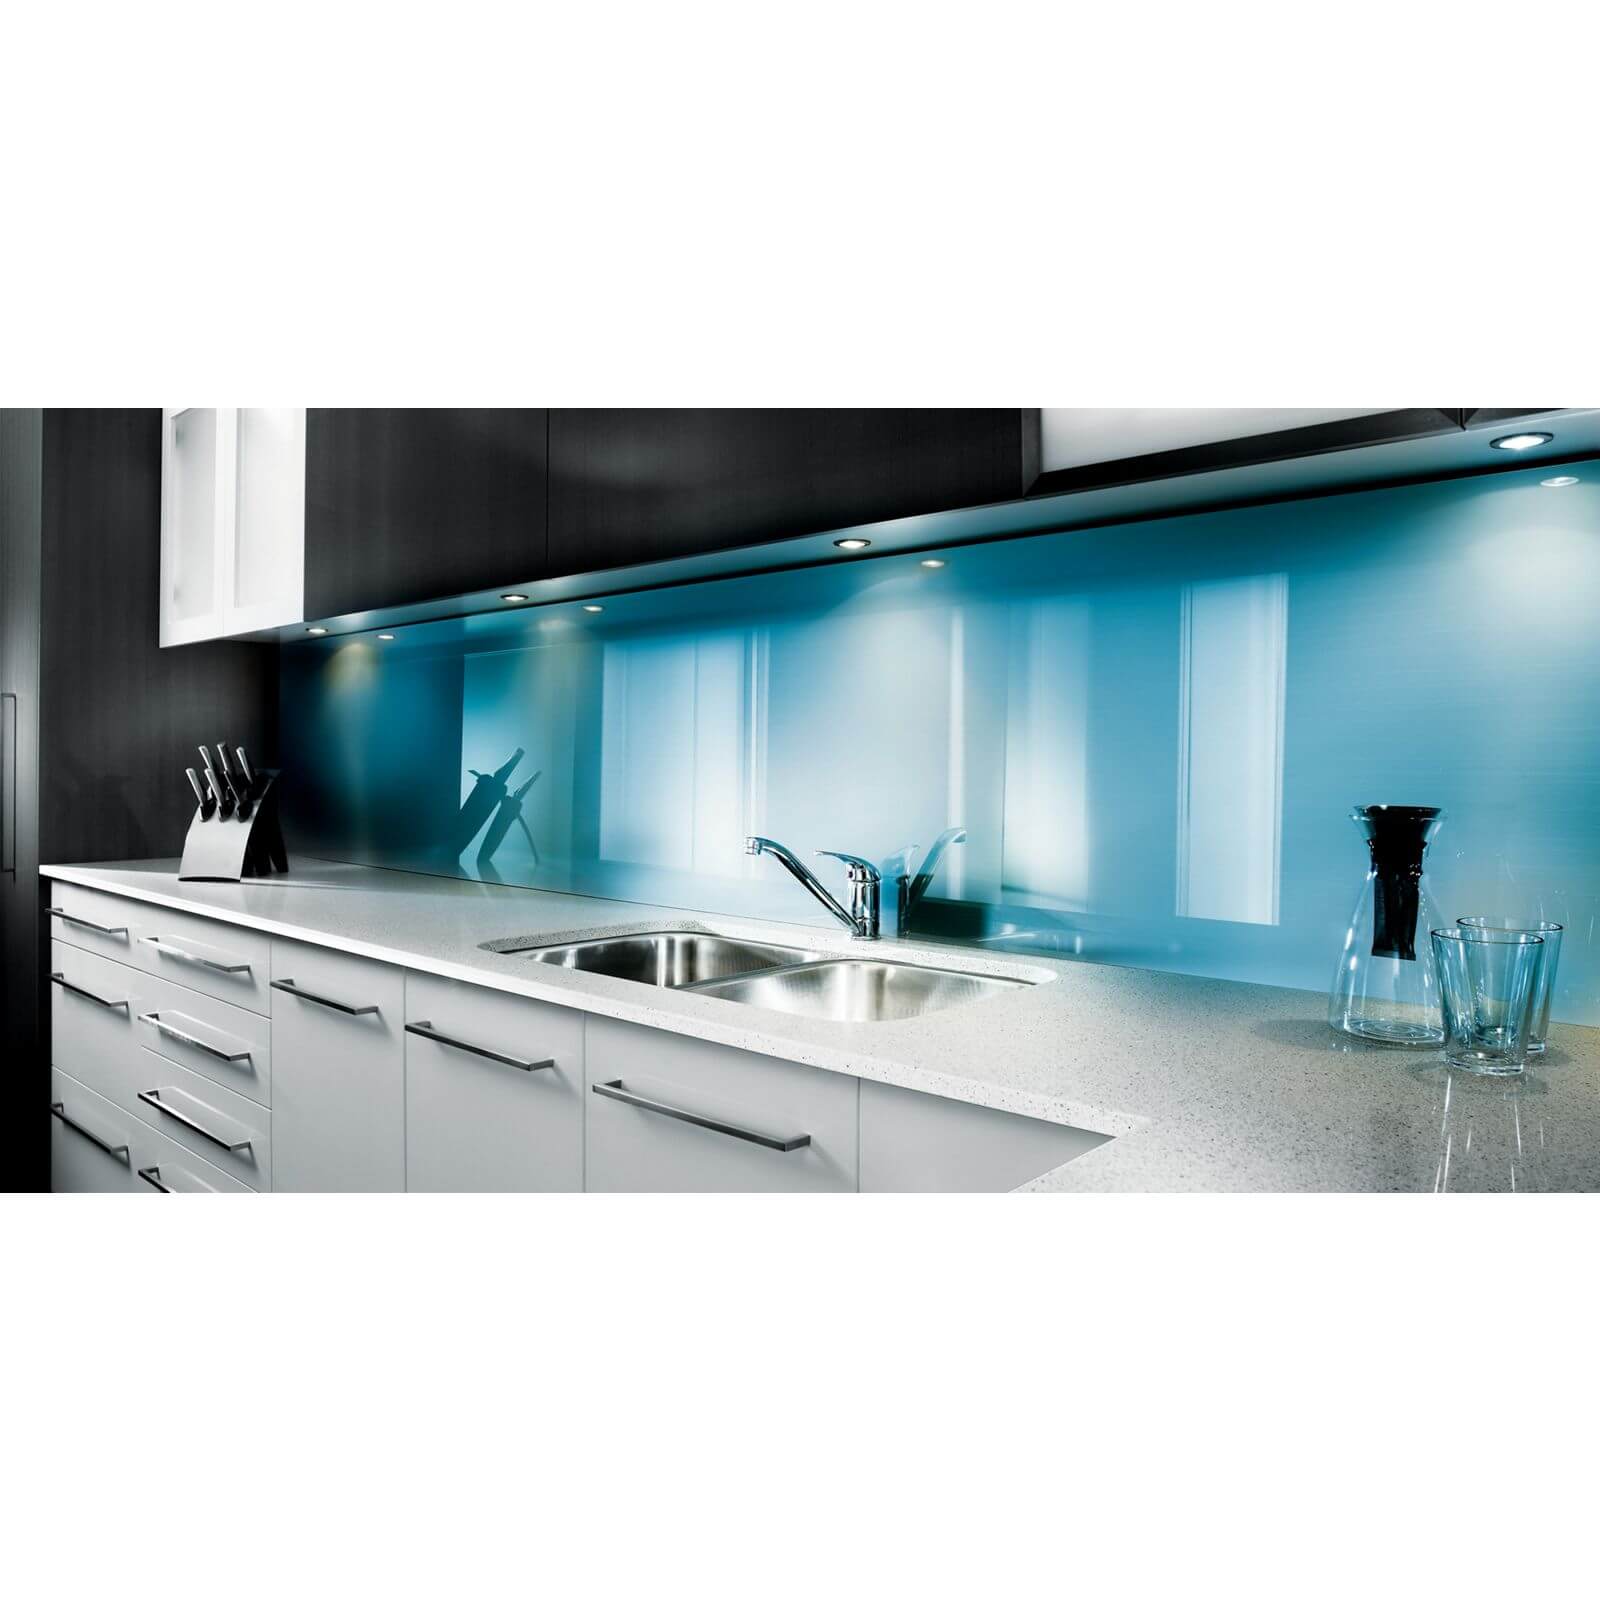 Zenolite Acrylic Kitchen Splashback Panel - 2070 x 500mm - Blue Atoll